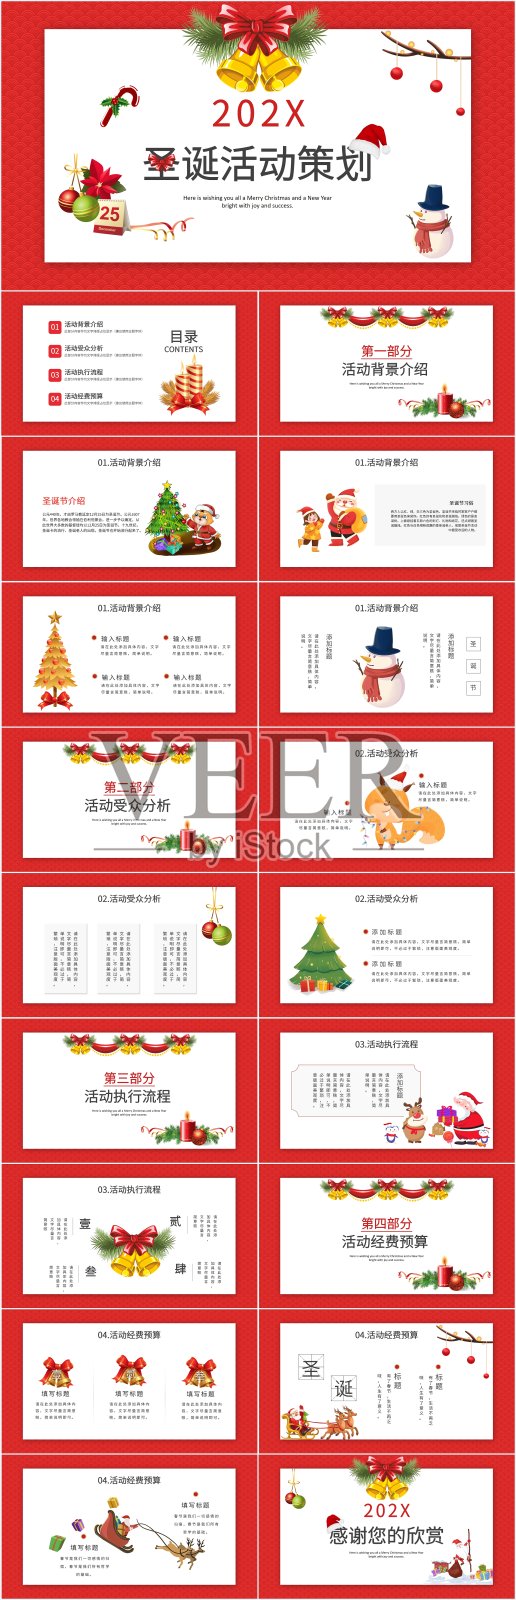 红色卡通风圣诞节活动策划PPT模板设计模板素材